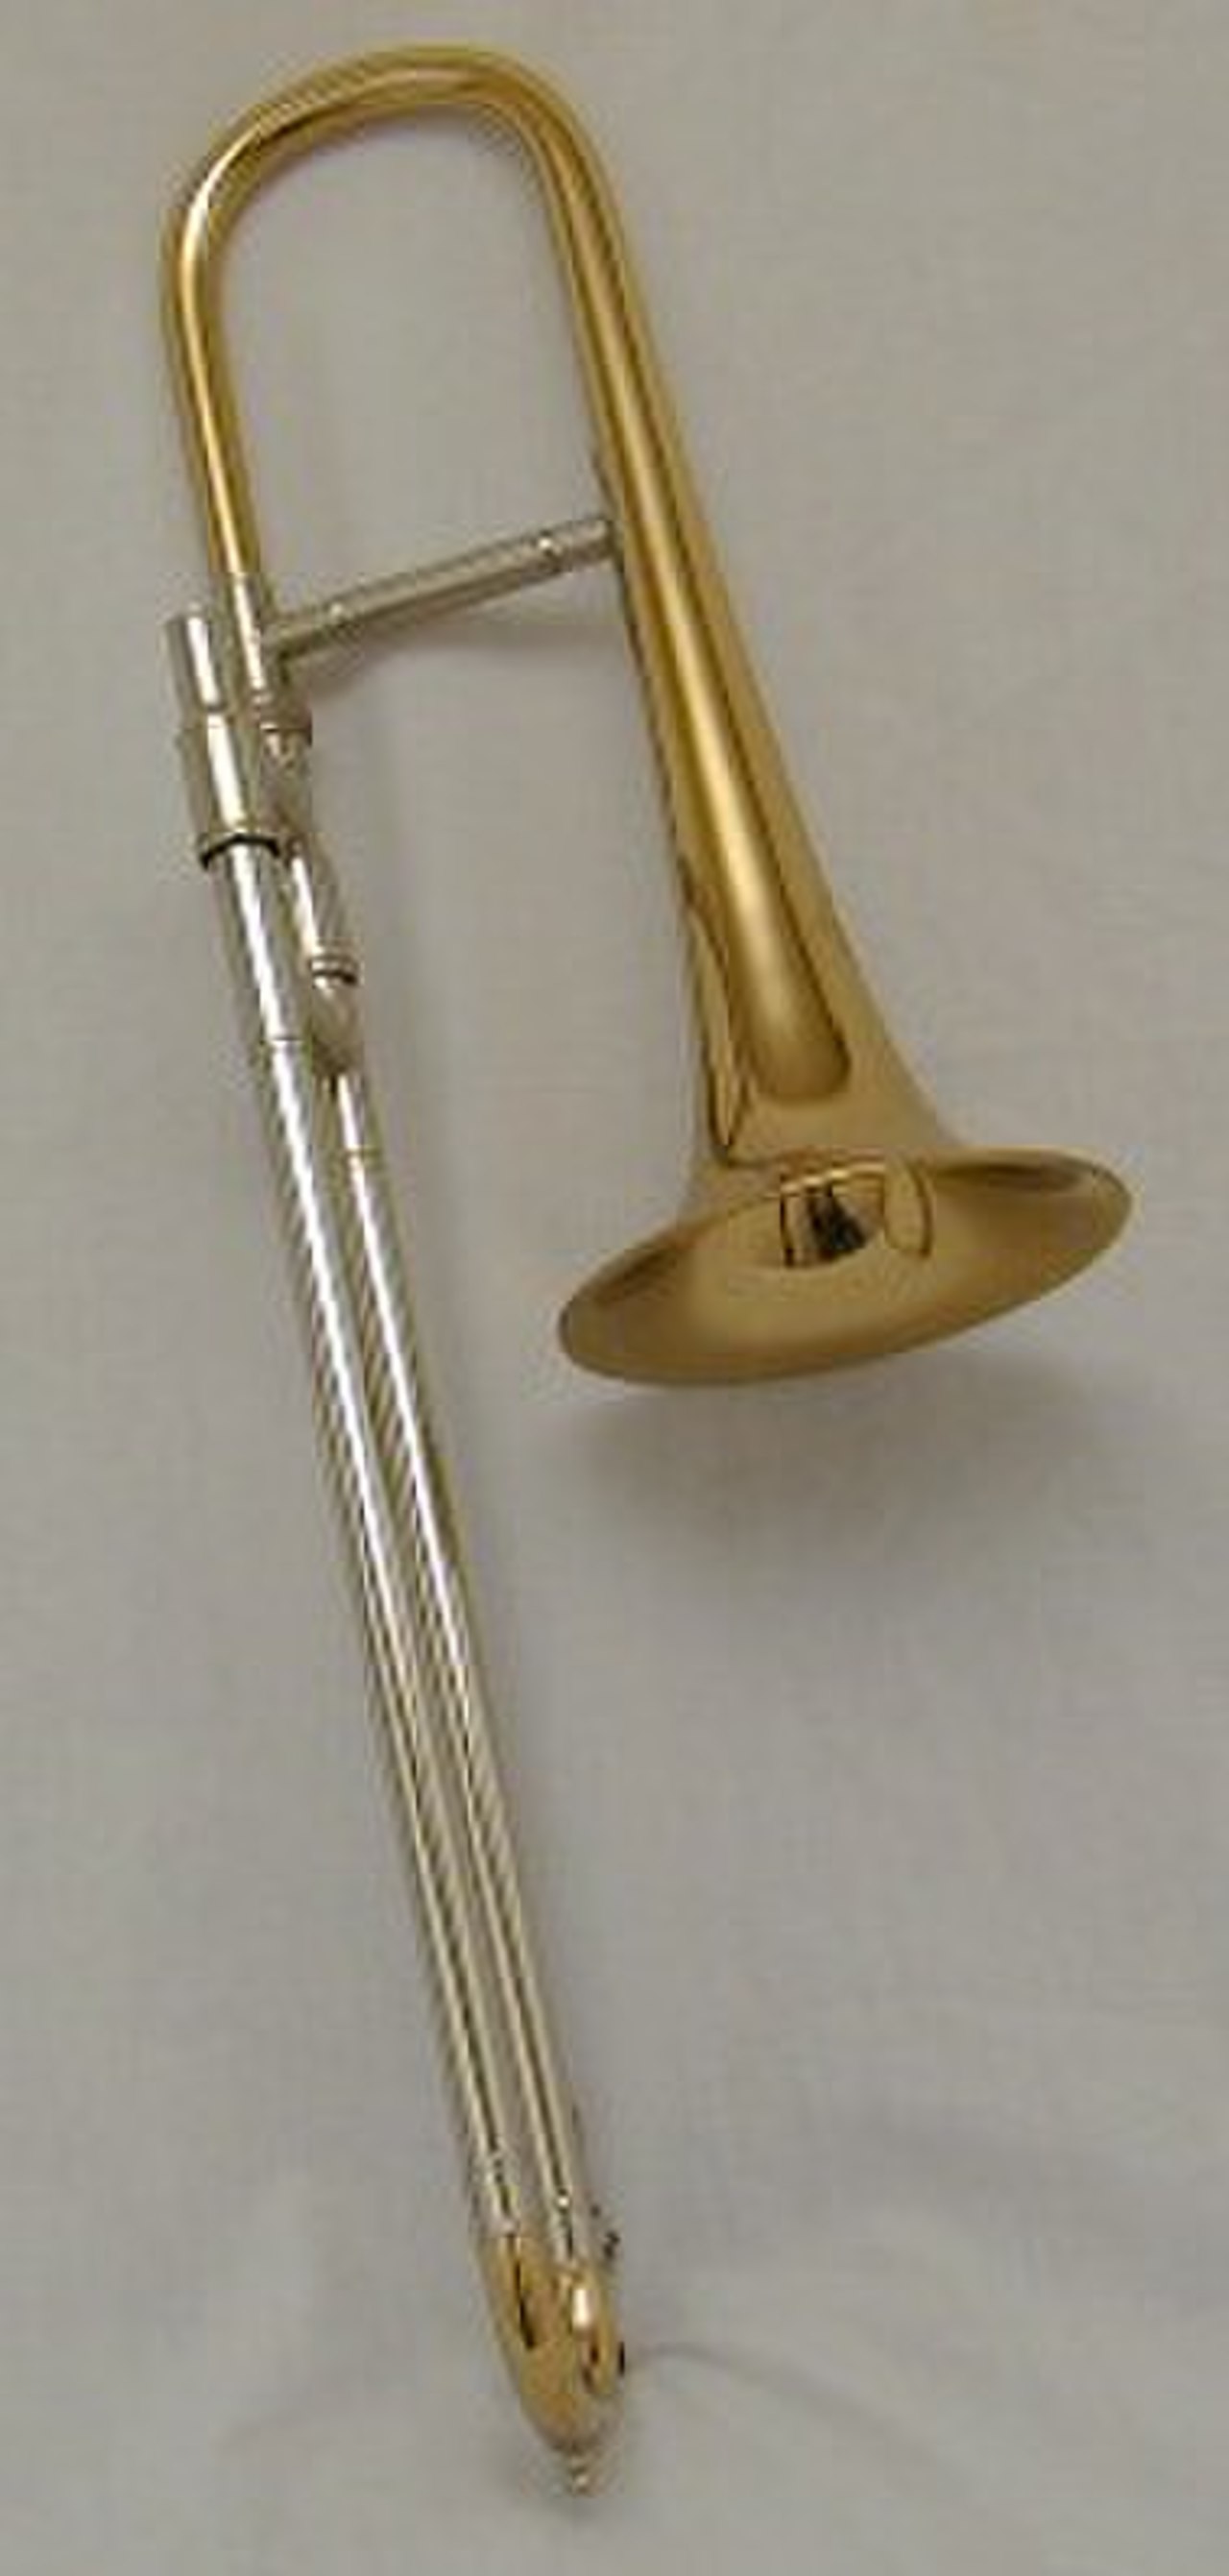 Кларнет тромбон. Сопрано тромбон. Тромбон сопрано Yamaha. Разновидности тромбона. Тромбон Википедия.